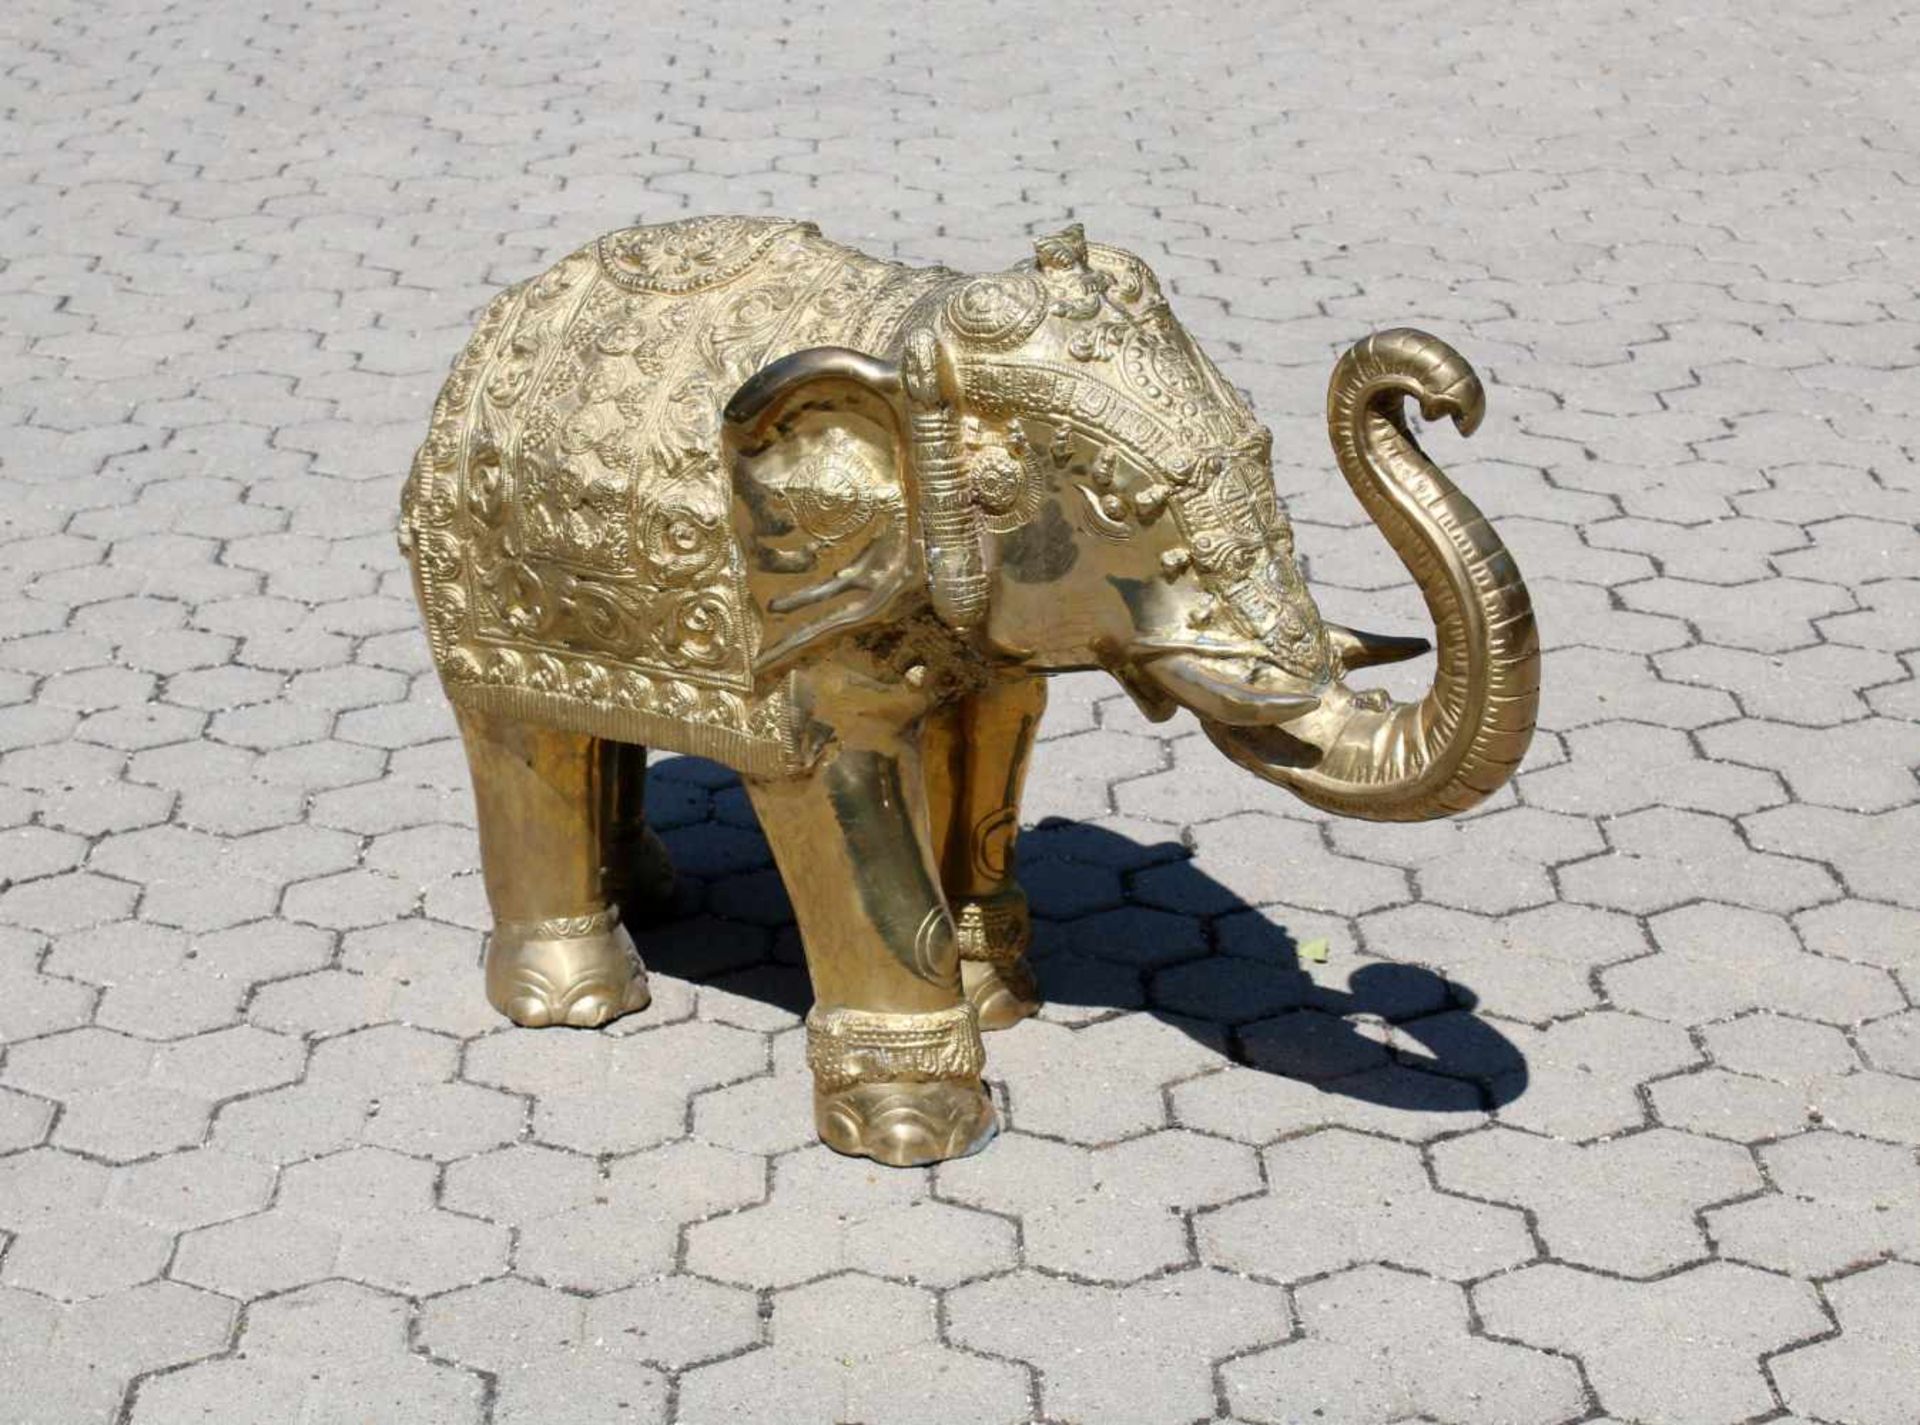 Vergoldeter, großer Elefant - Indien Festlich geschmückter Elefant, reich halbplastisch